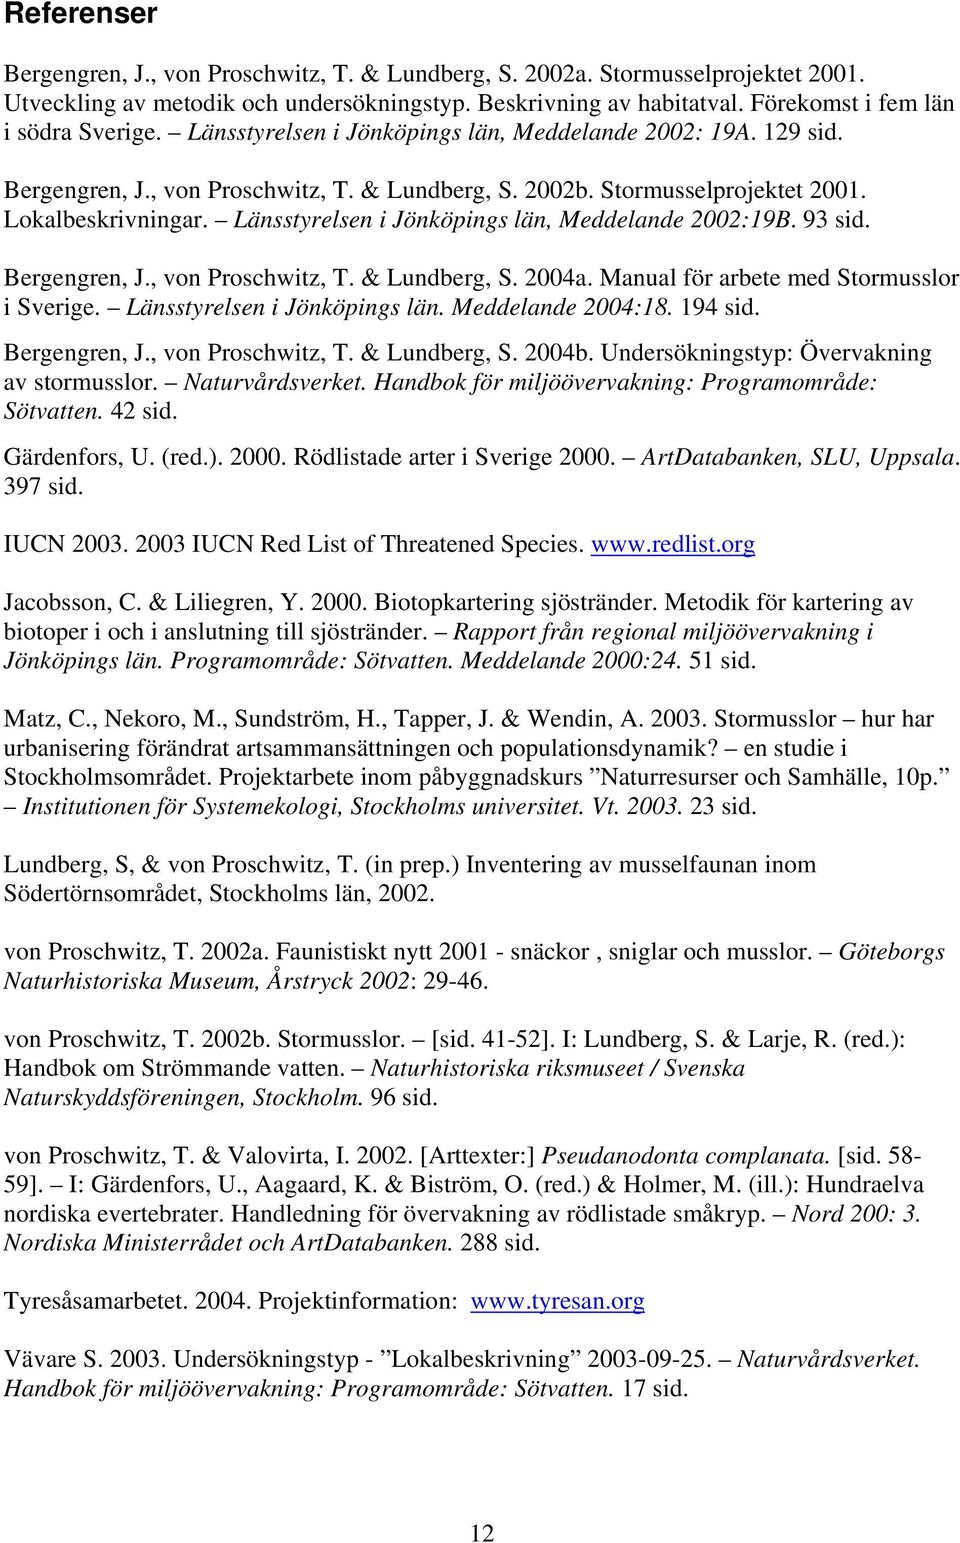 Lokalbeskrivningar. Länsstyrelsen i Jönköpings län, Meddelande 2002:19B. 93 sid. Bergengren, J., von Proschwitz, T. & Lundberg, S. 2004a. Manual för arbete med Stormusslor i Sverige.